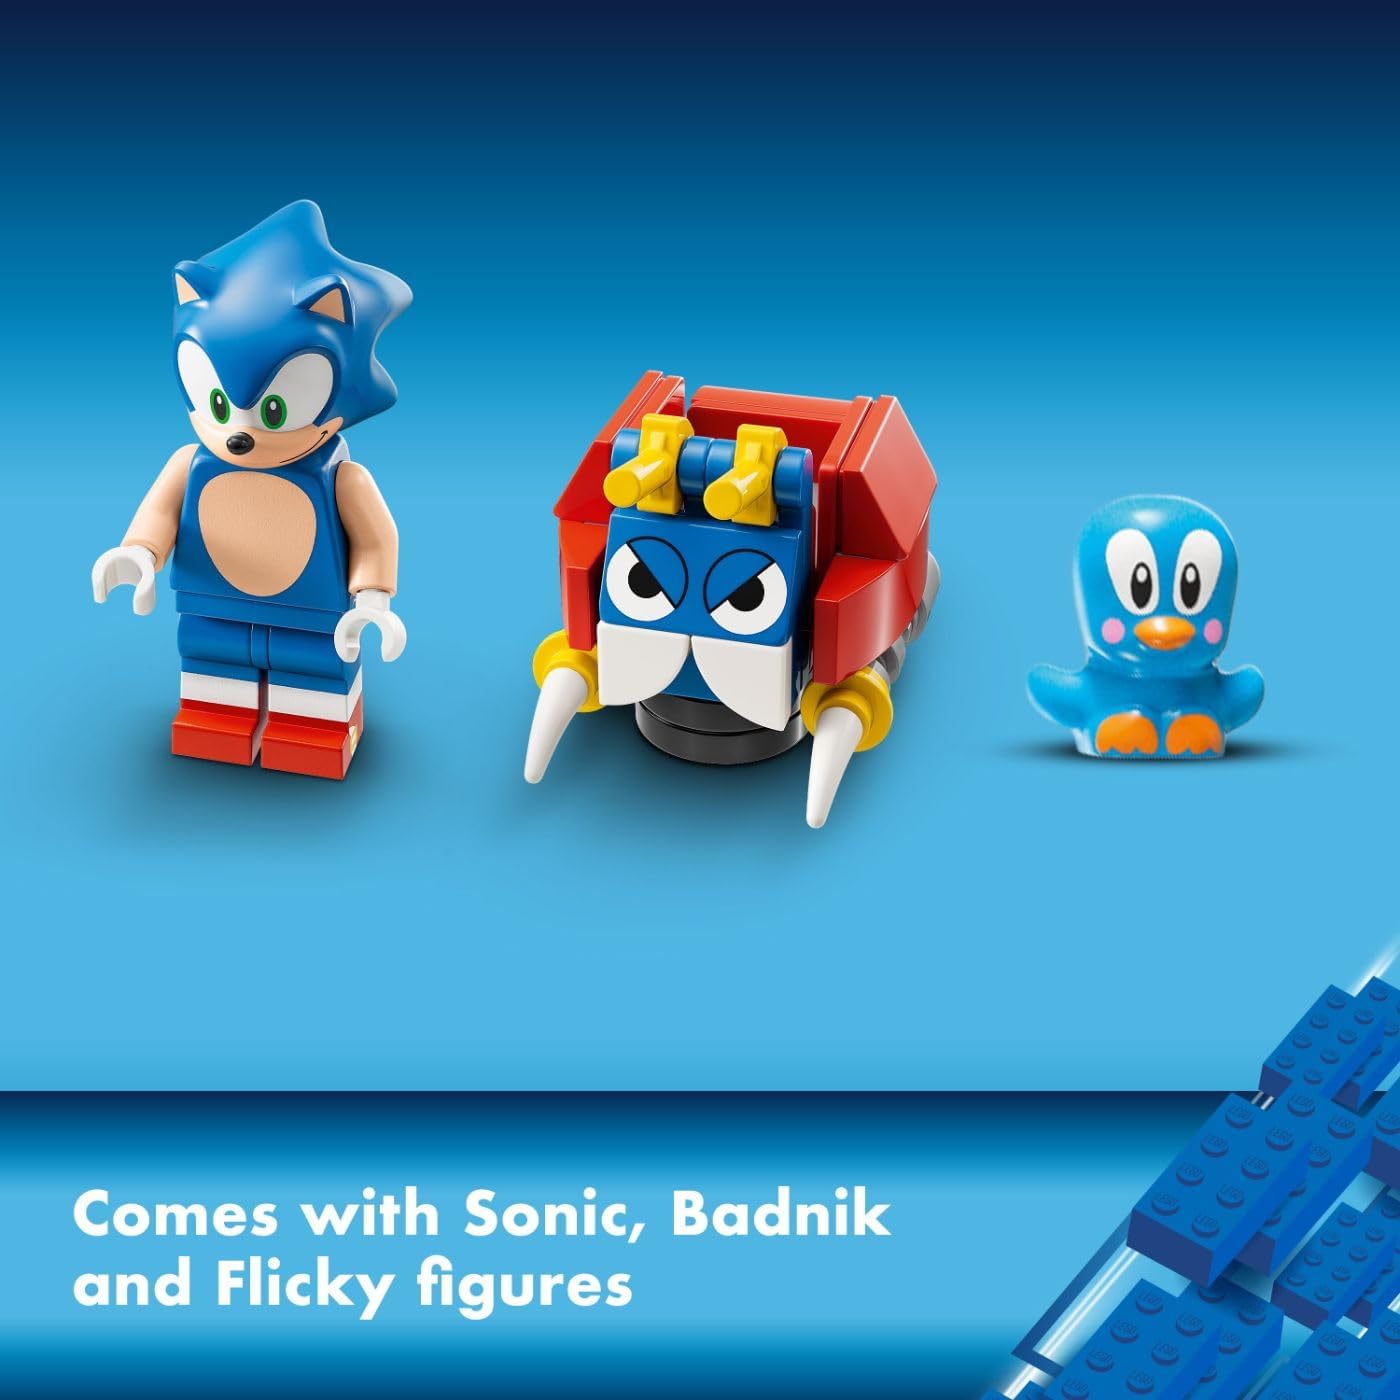 مجموعة ألعاب البناء Sonic The Hedgehog Sonic's Speed Sphere Challenge 76990 من LEGO، مجموعة لعب Sonic مع قاذفة Speed Sphere و3 شخصيات صوتية، هدية عيد ميلاد ممتعة لمحبي الشباب من سن 6 سنوات فما فوق